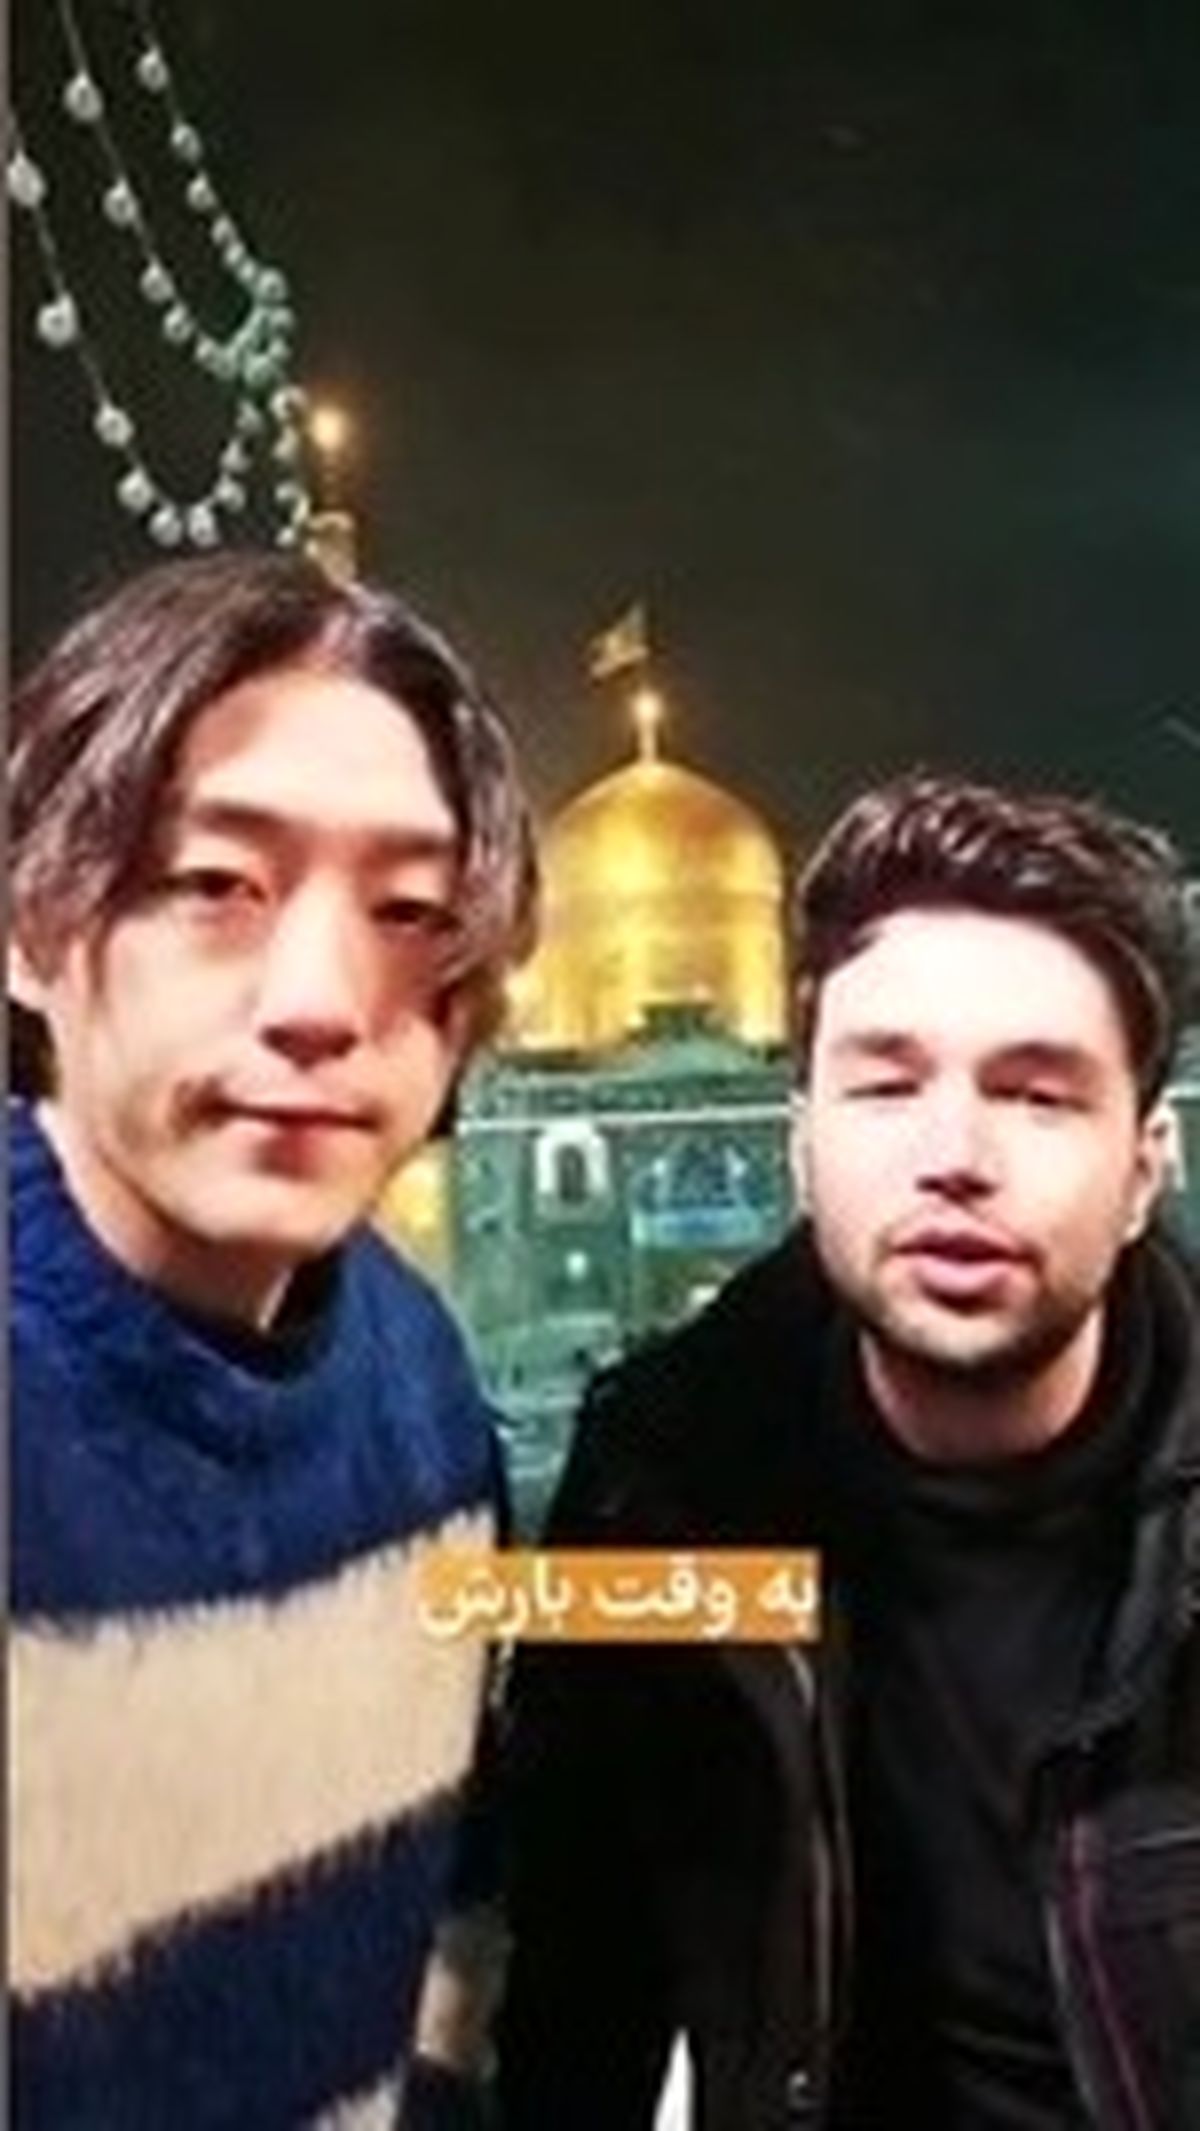 متفاوت ترین دعوت به کنسرت در حرم امام رضا (ع) /ویدئو